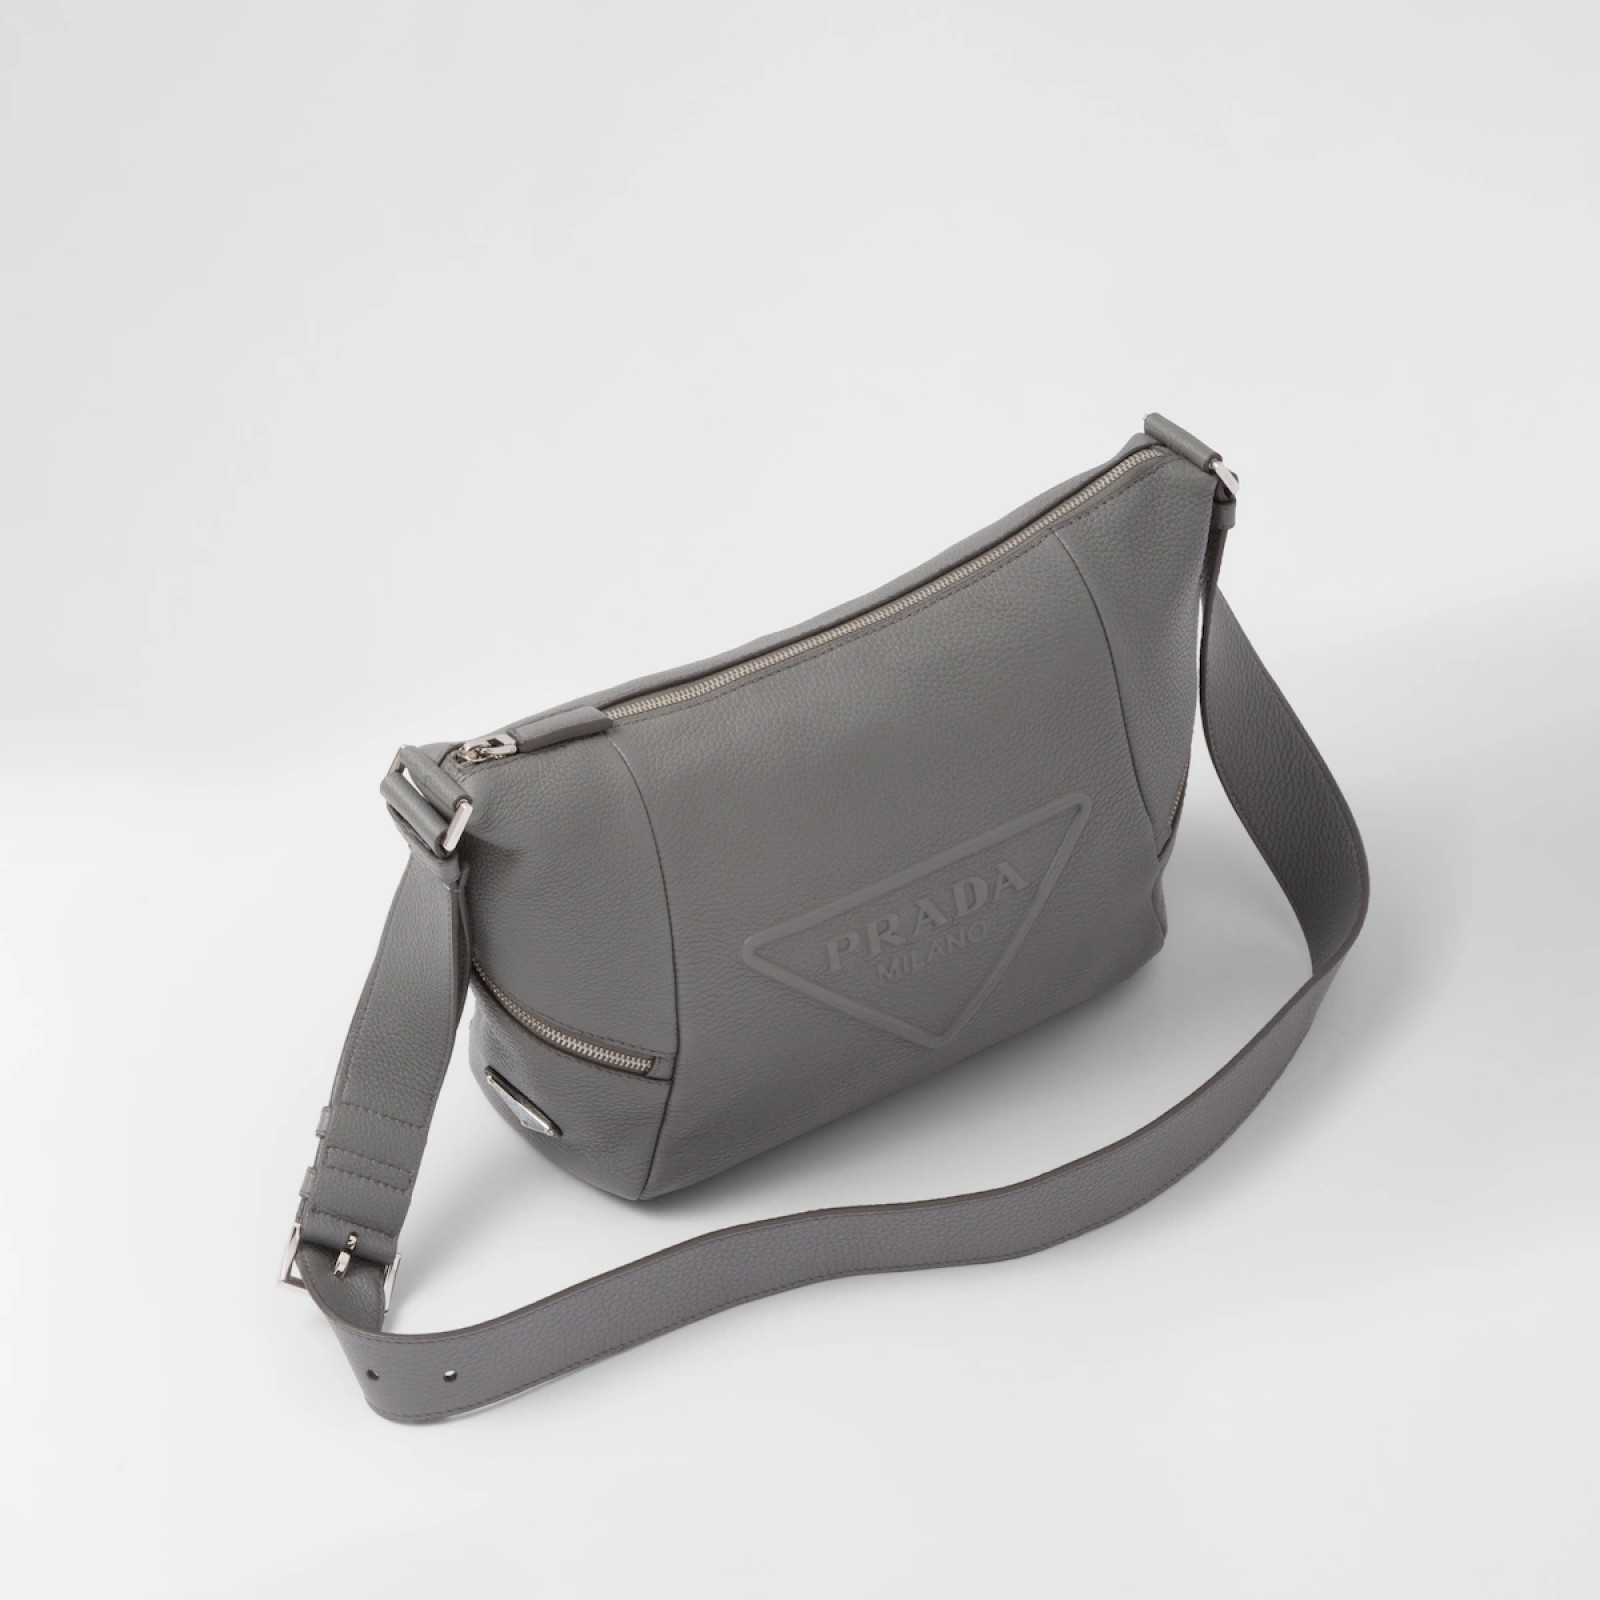 Leather bag with shoulder strap